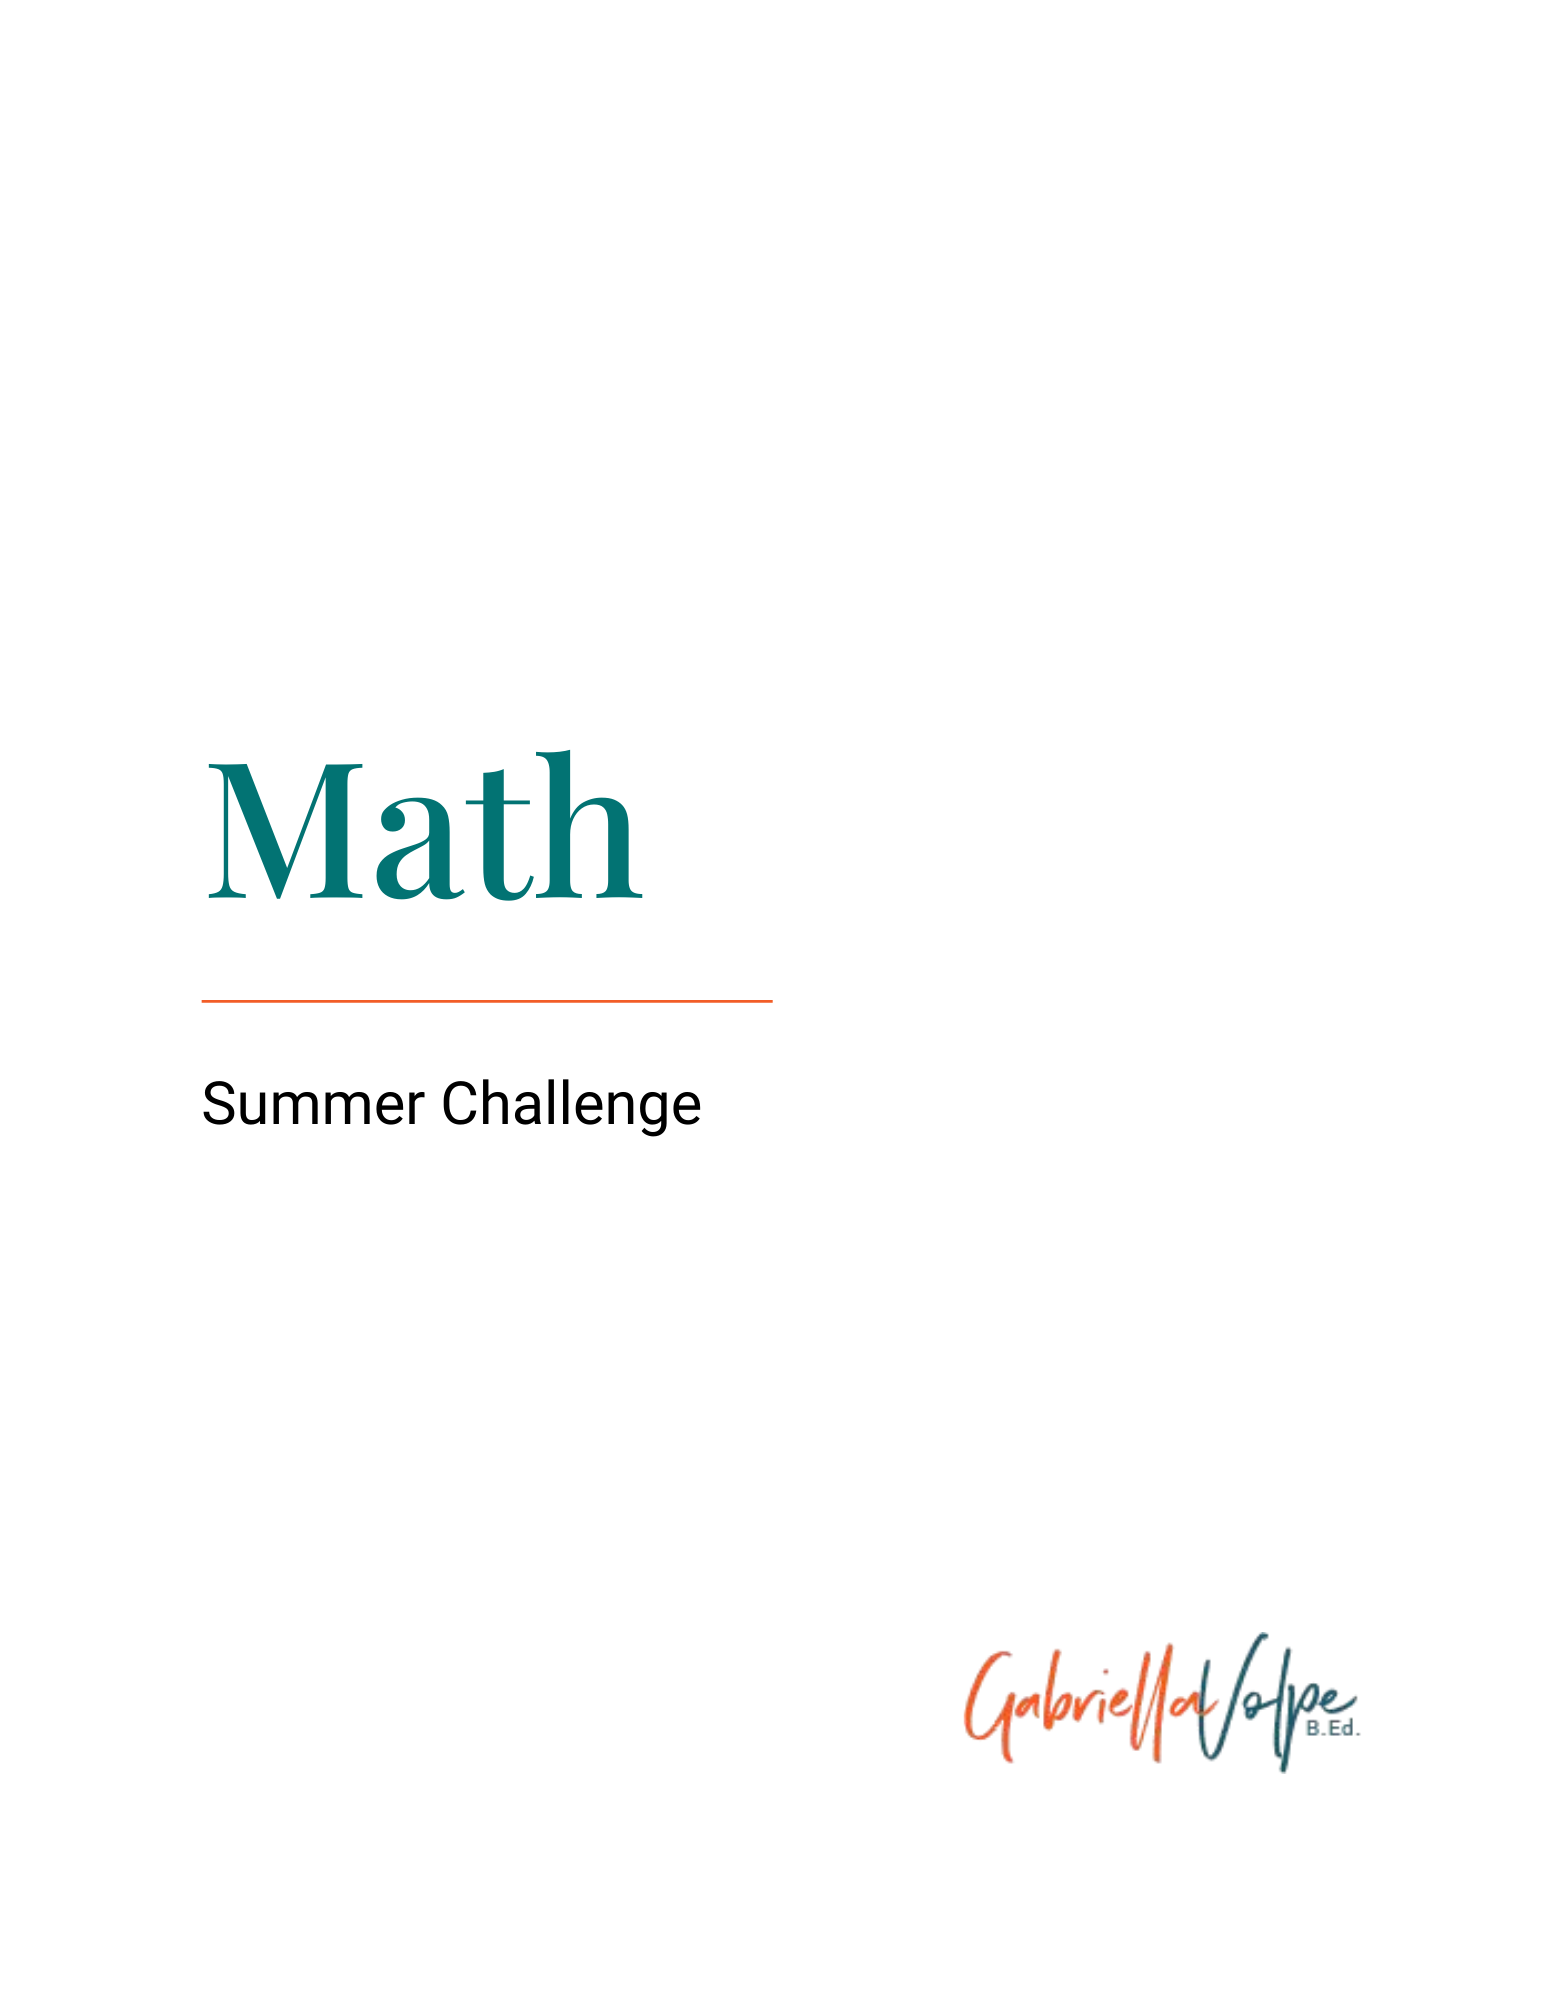 Math Summer Challenge